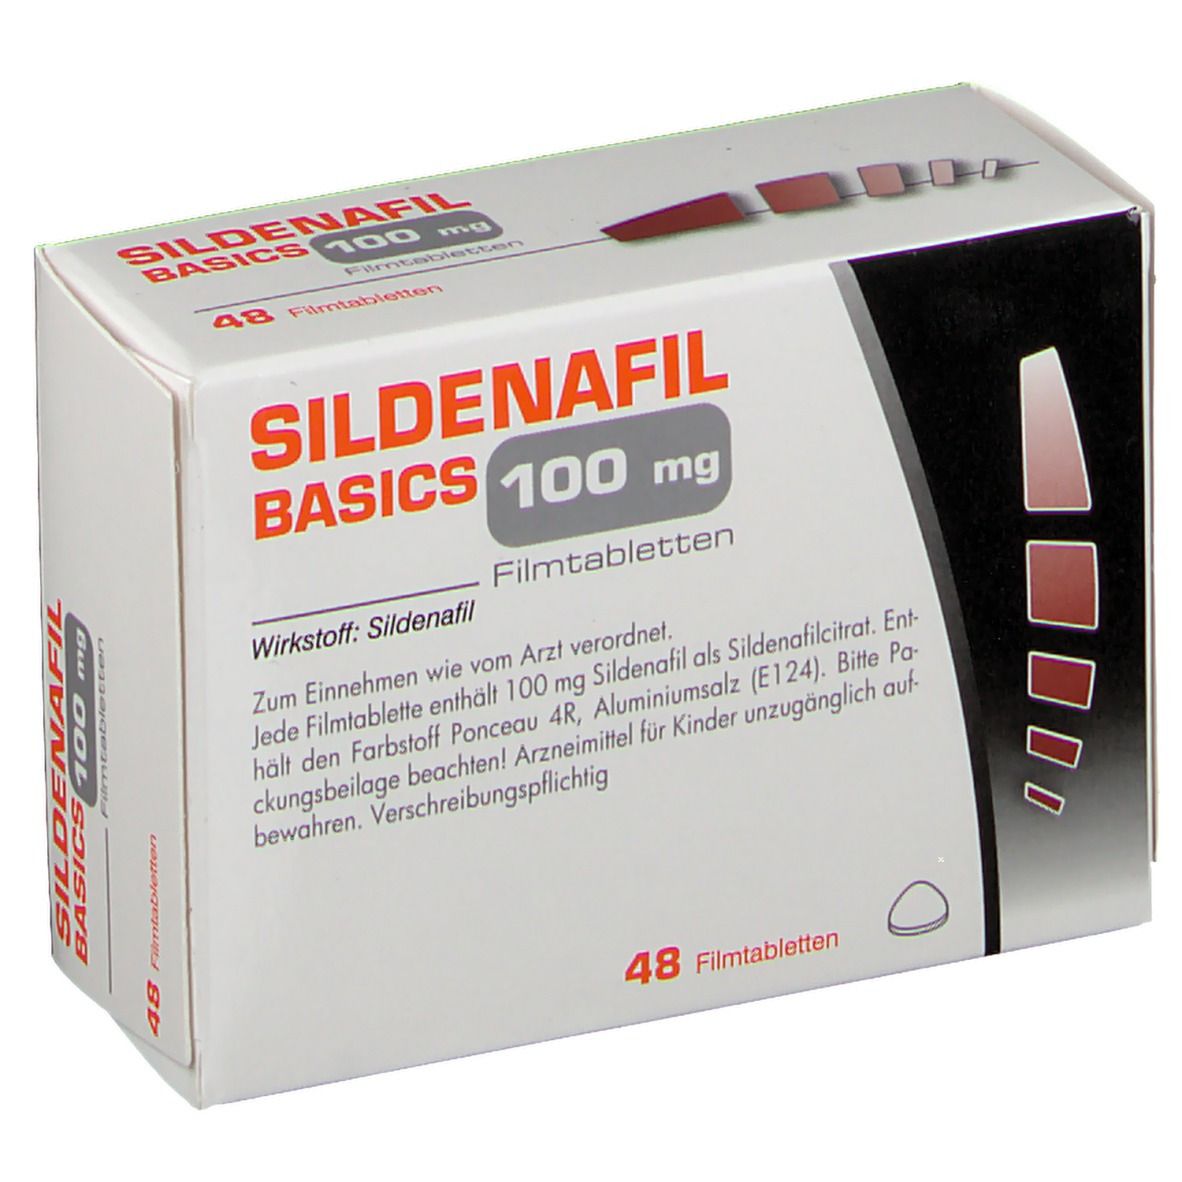 SILDENAFIL BASICS 100 mg